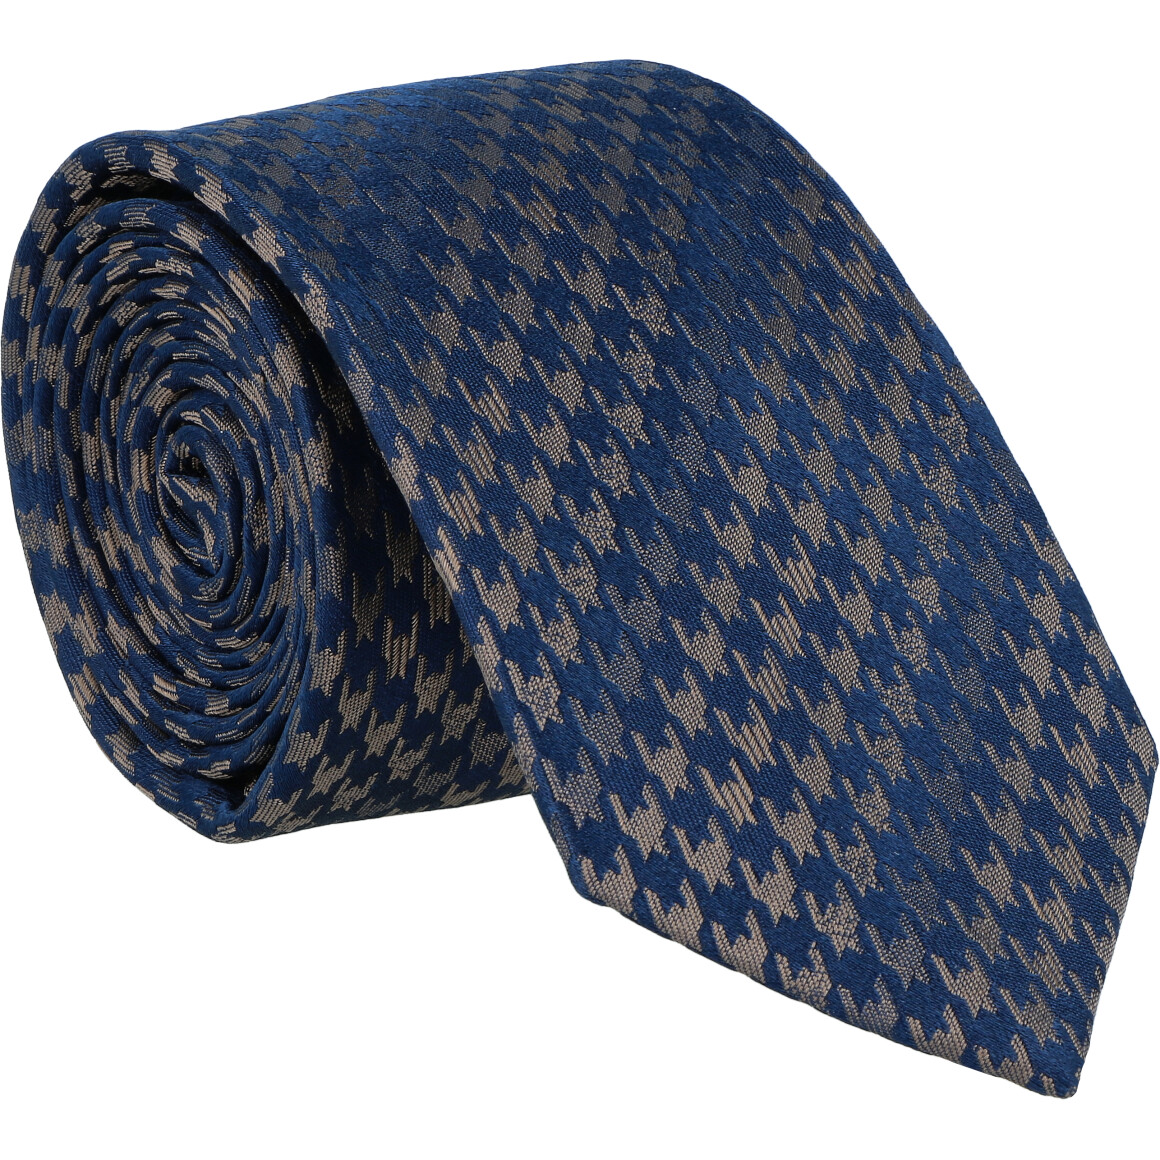 Krawatte 100% Seide 6,5cm